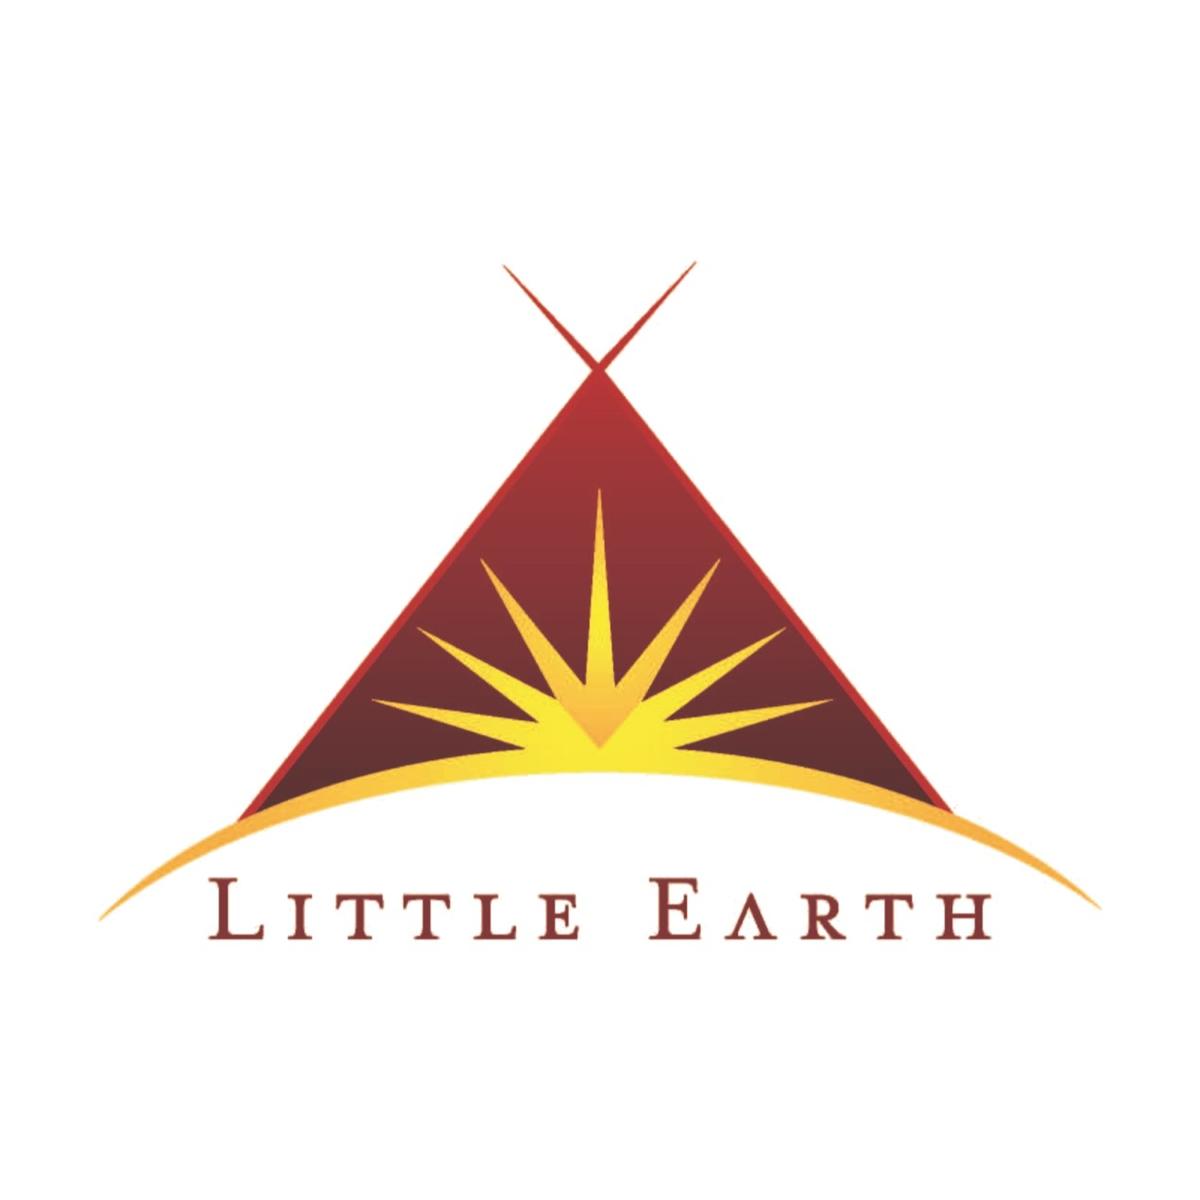 Little Earth logo